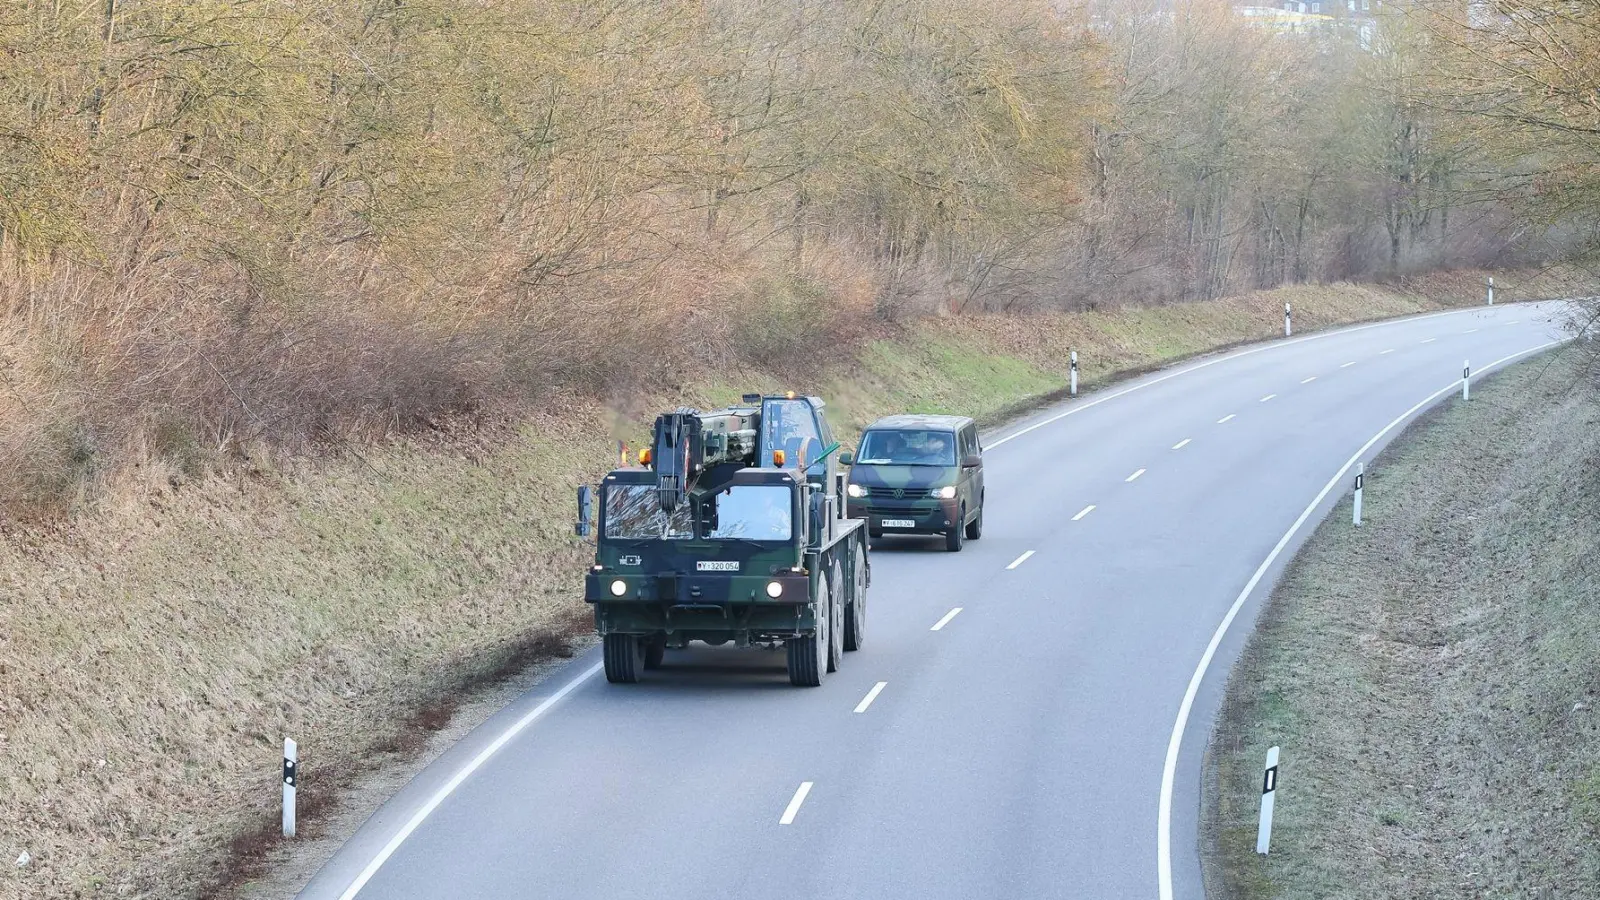 Bundeswehrfahrzeuge fahren auf einer Bundesstraße. Zwei Männer sollen für den russischen Geheimdienst spioniert haben. (Foto: Daniel Löb/dpa/Symbolbild)